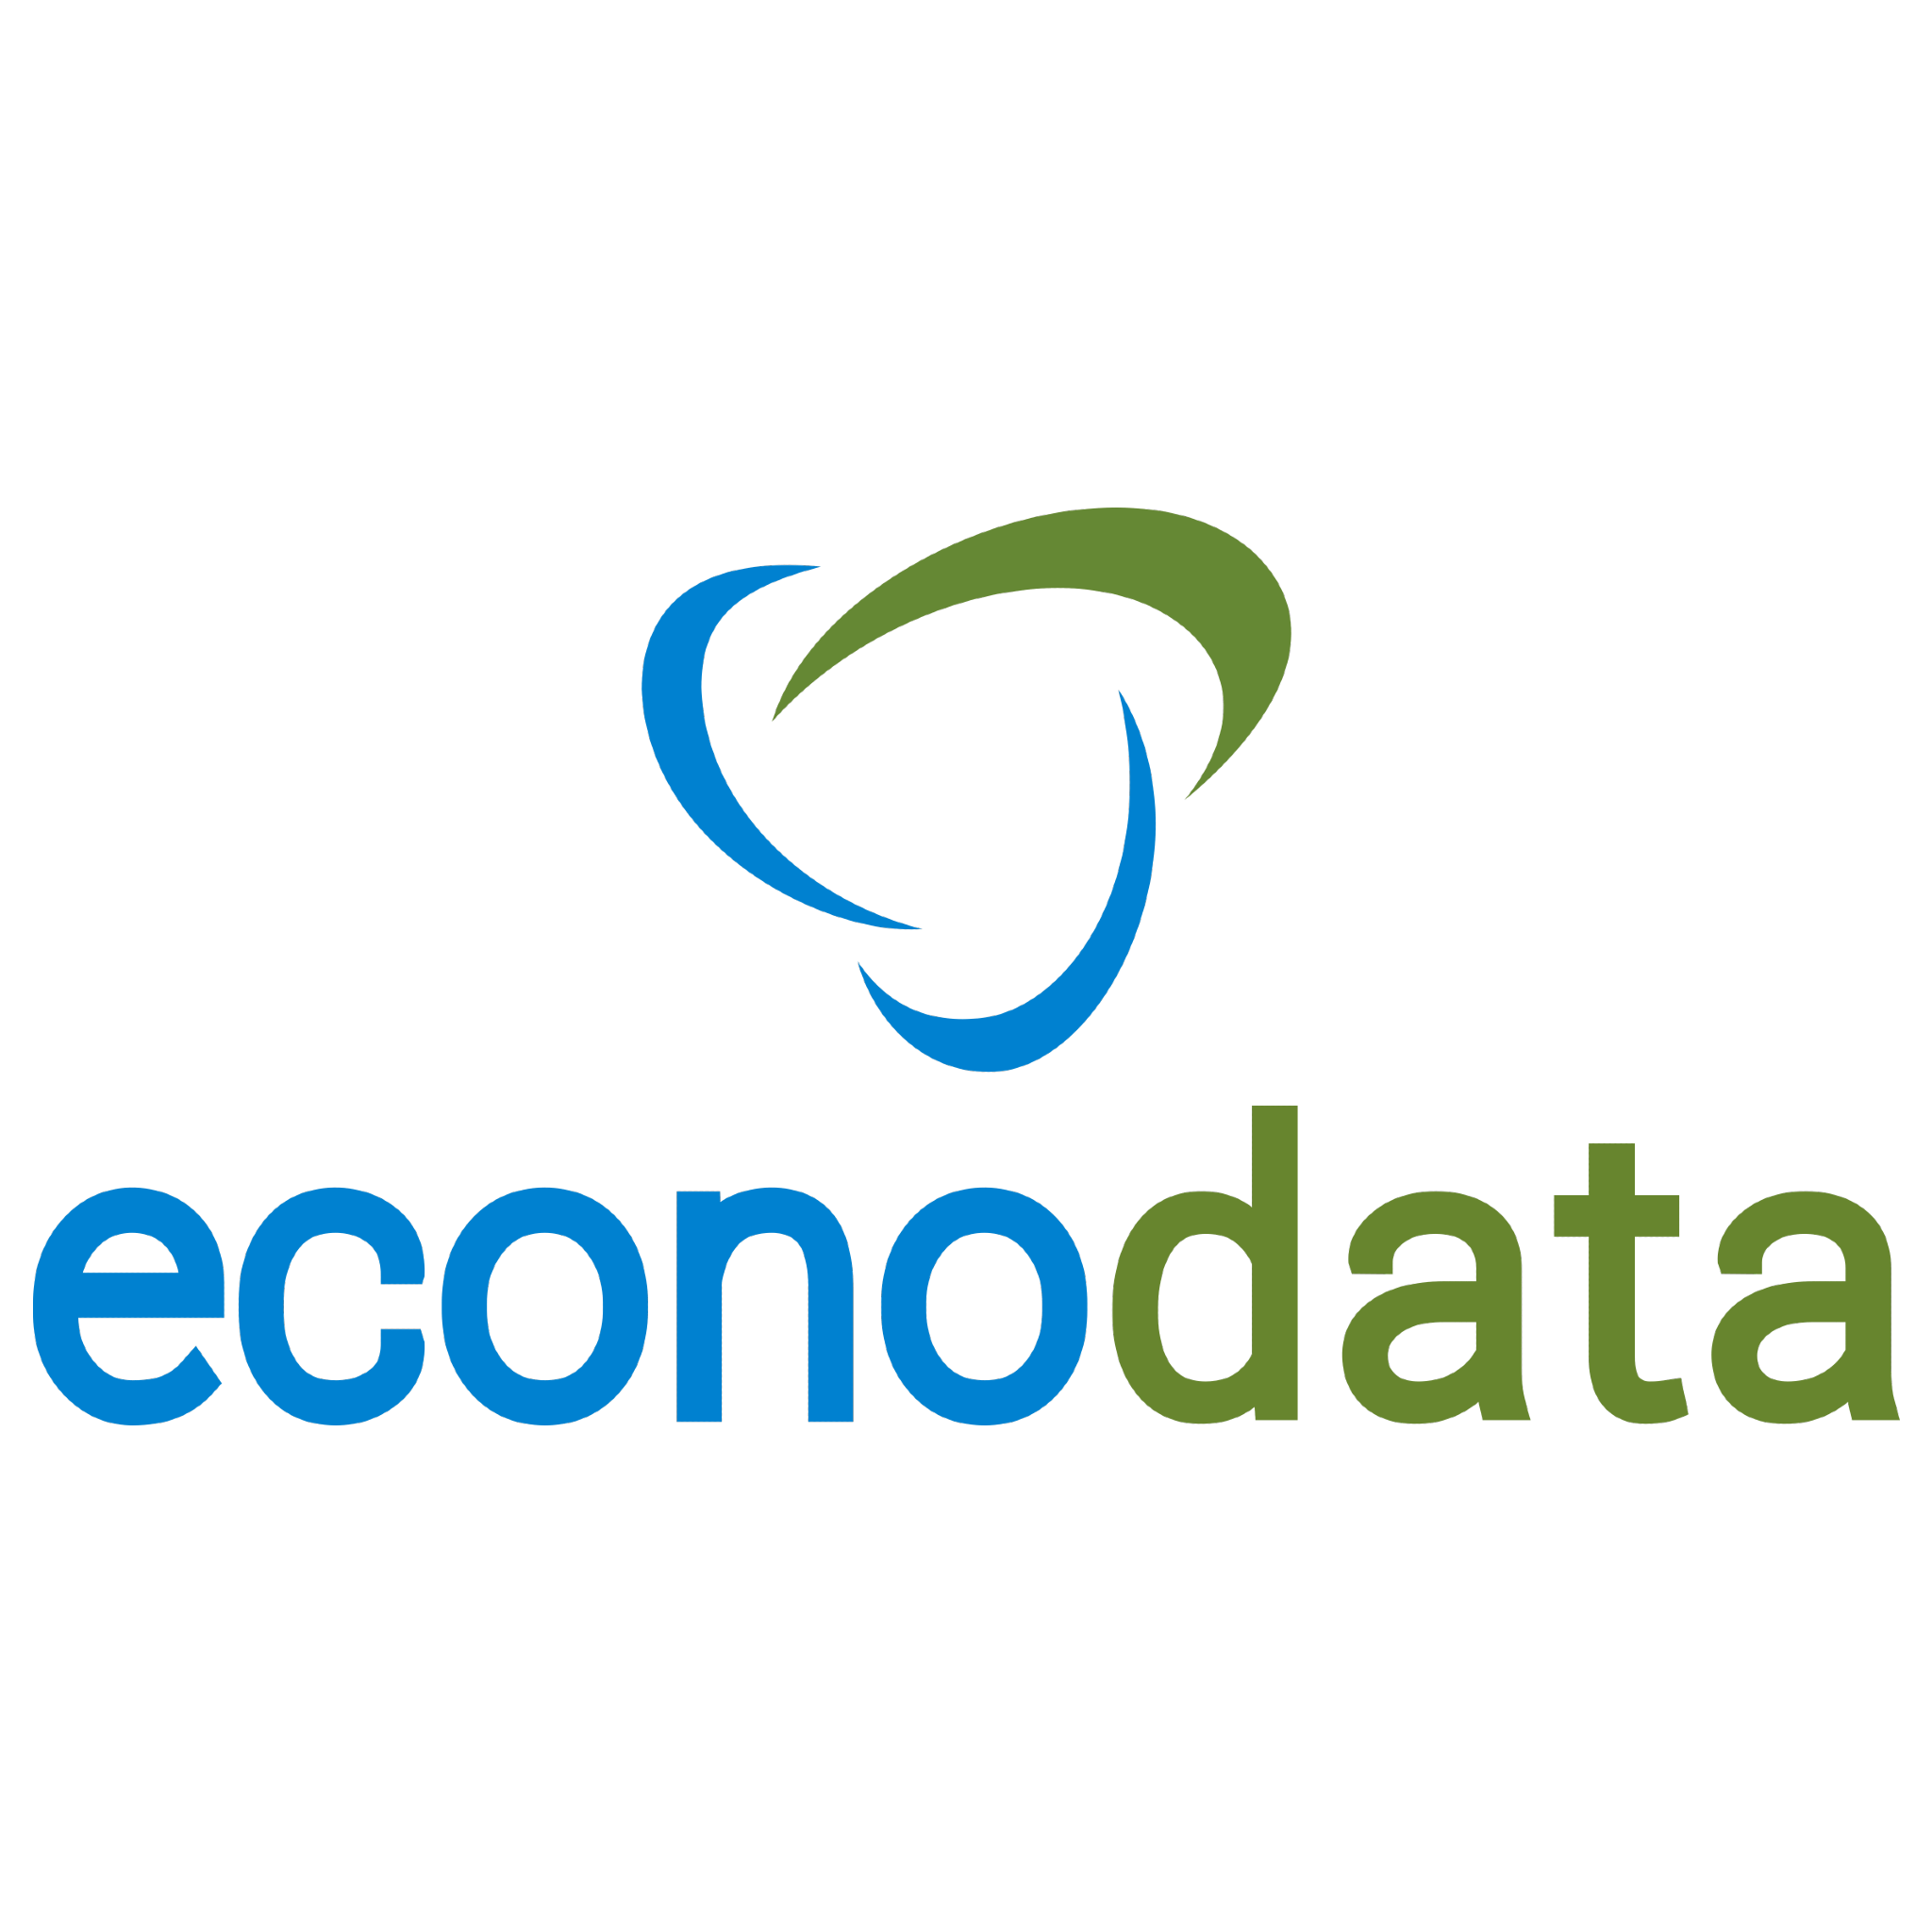 Econodata Logo